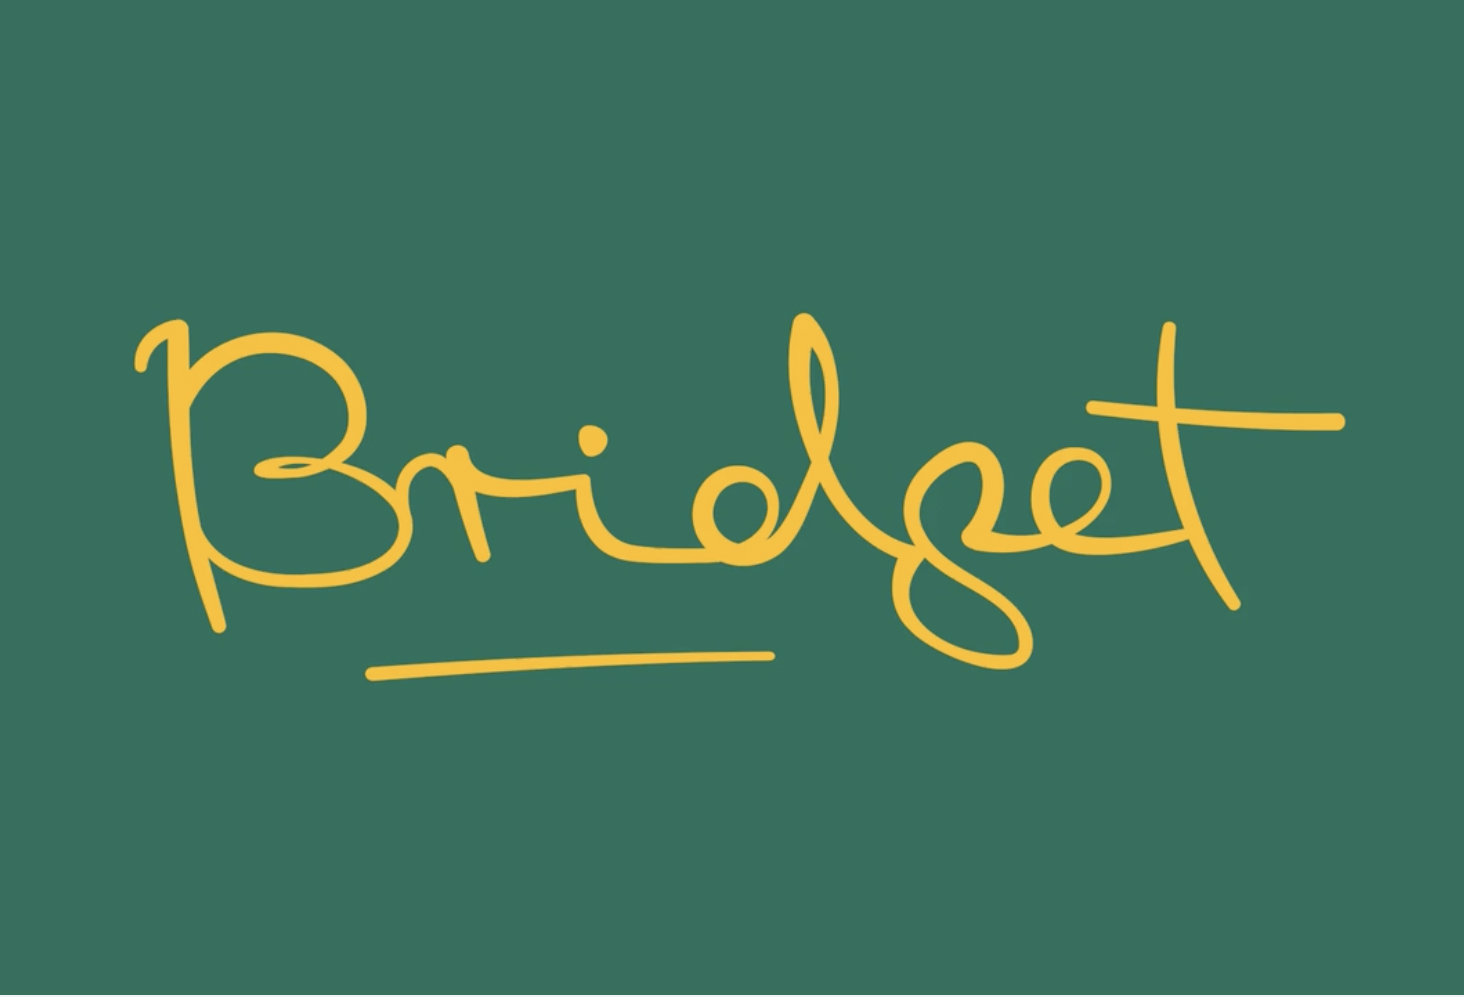 Our Showreel – Bridget